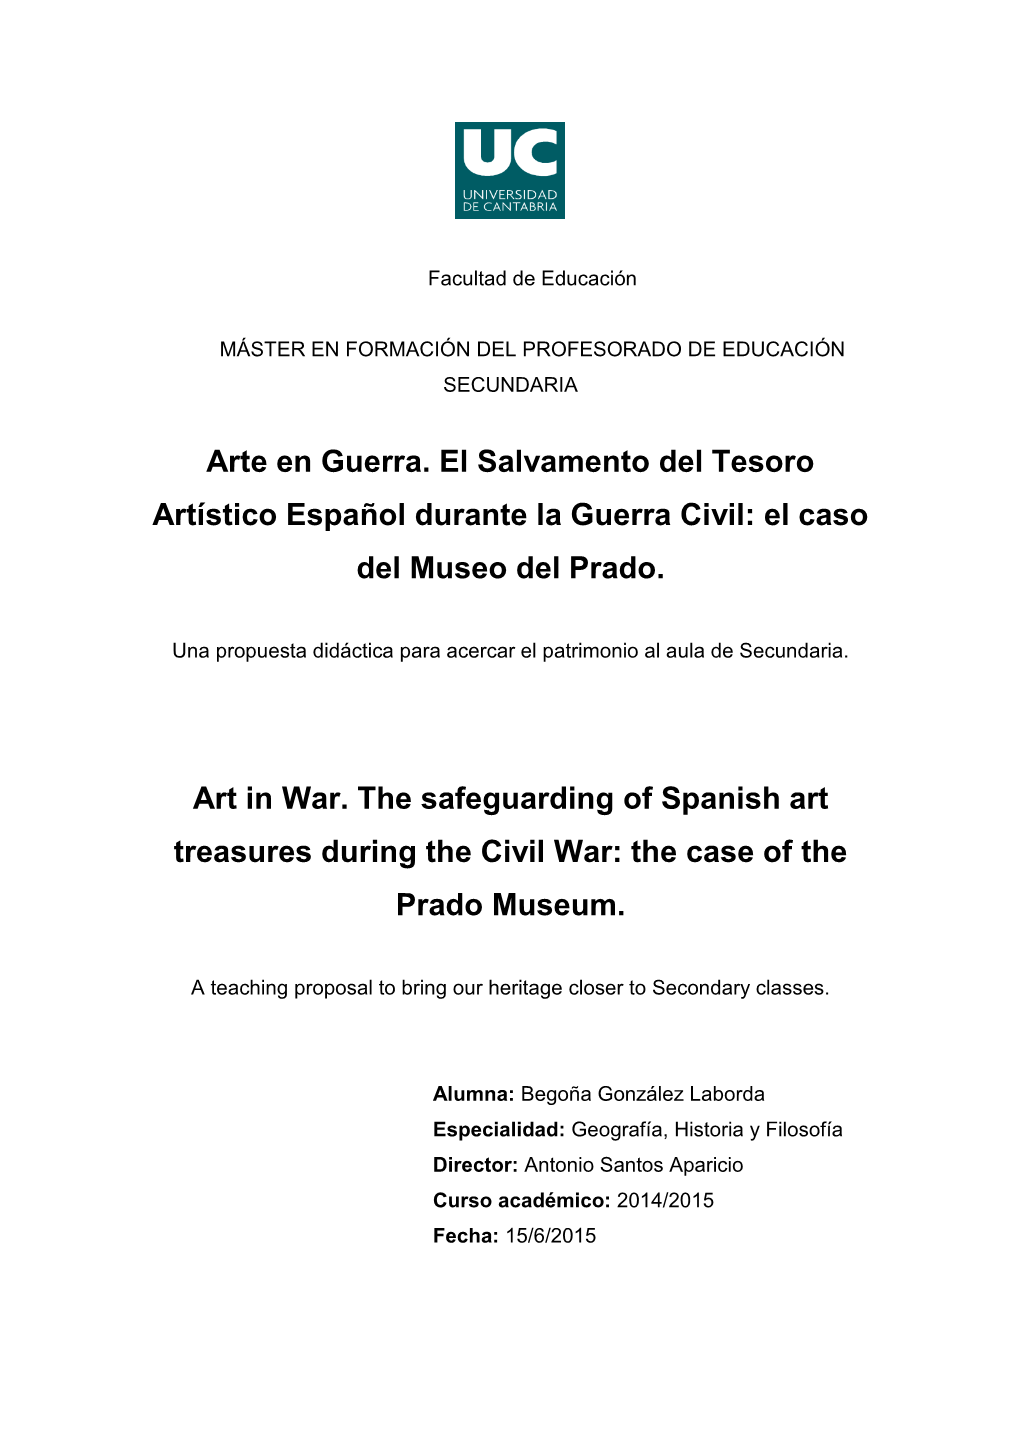 Arte En Guerra. El Salvamento Del Tesoro Artístico Español Durante La Guerra Civil: El Caso Del Museo Del Prado